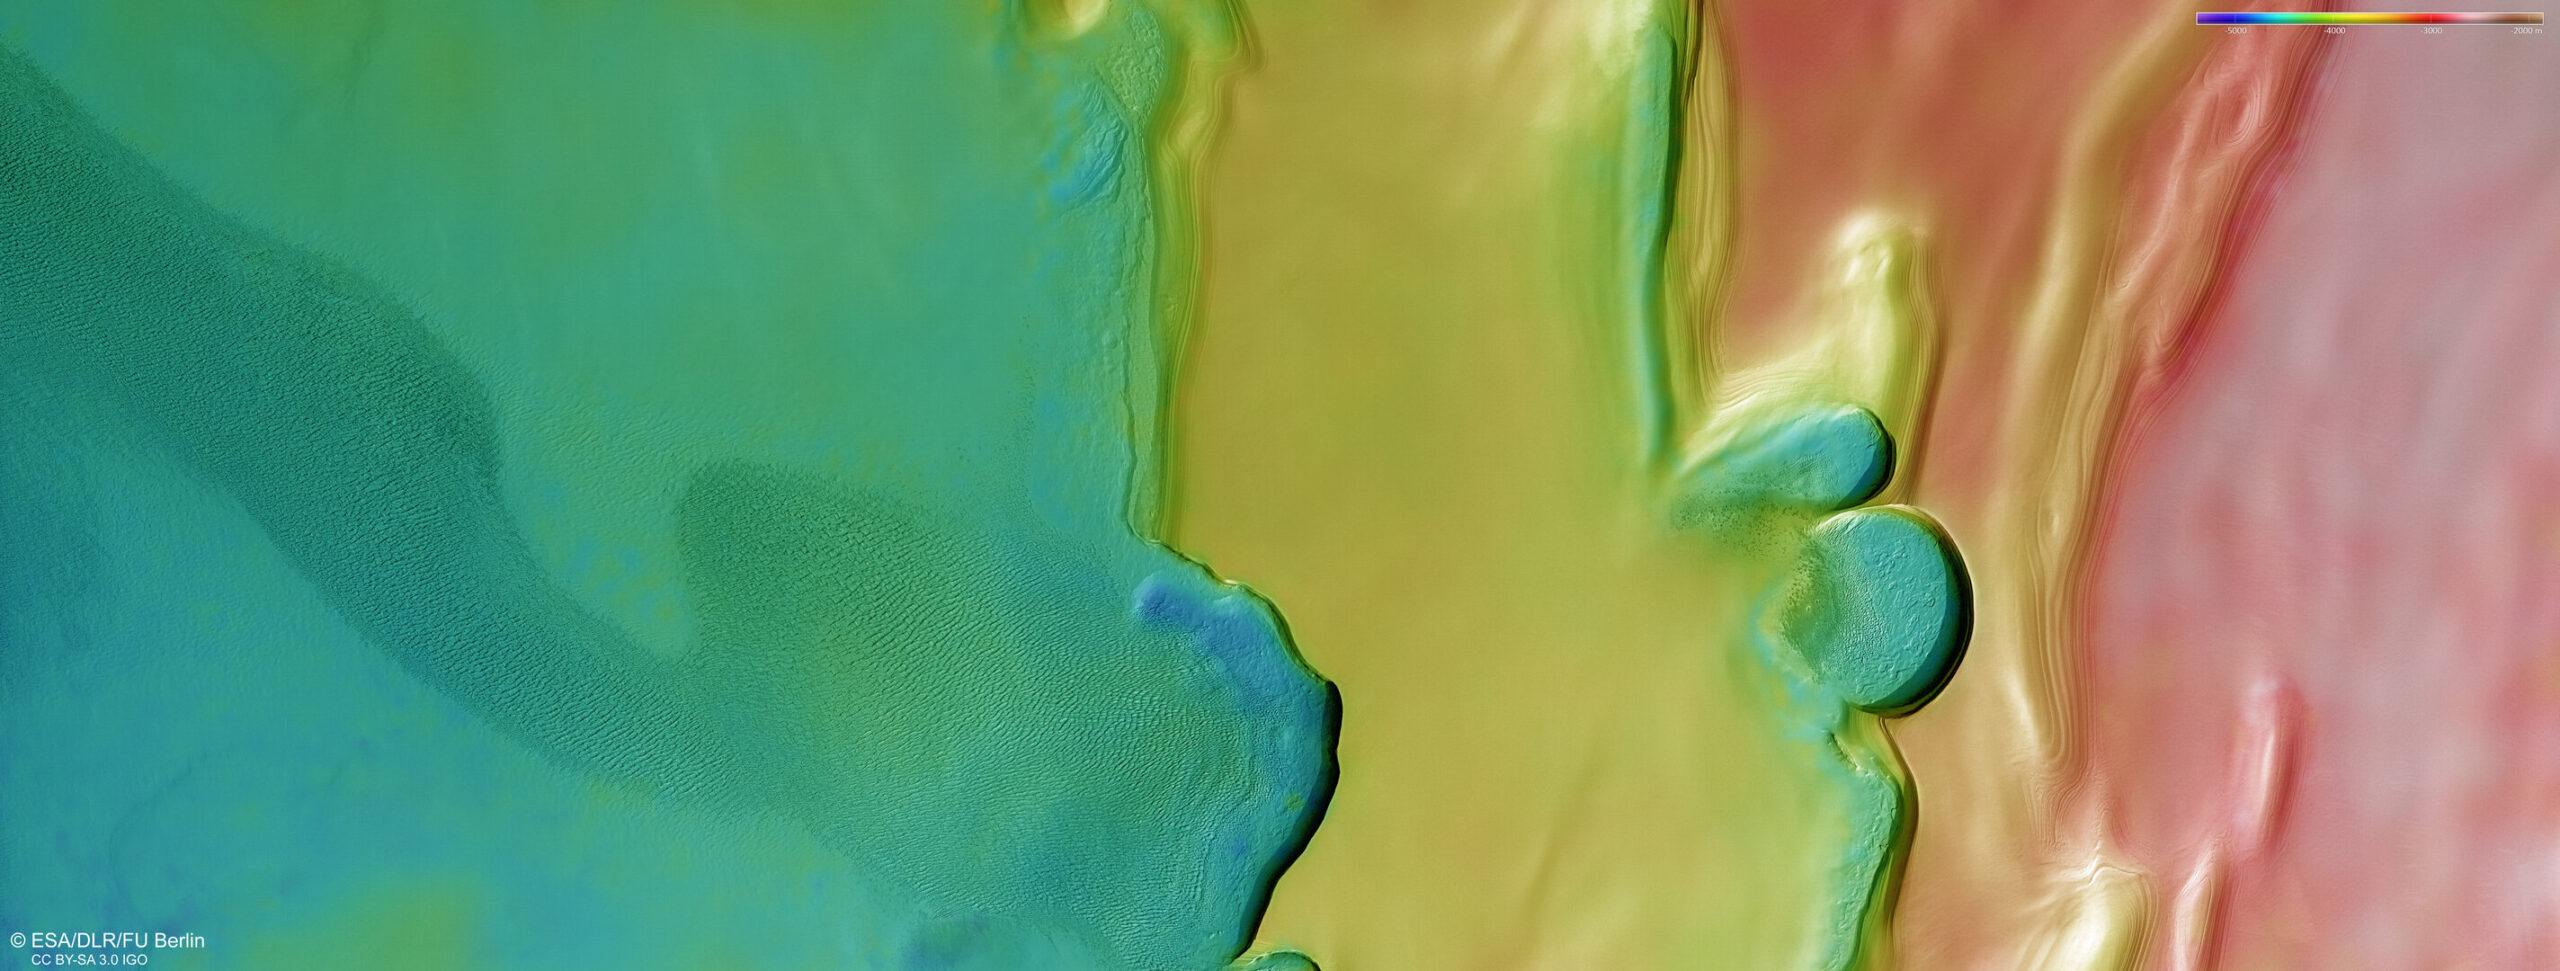 Topografija sjevernog polarnog područja Marsa. Zasluge: ESA/DLR/FU Berlin.